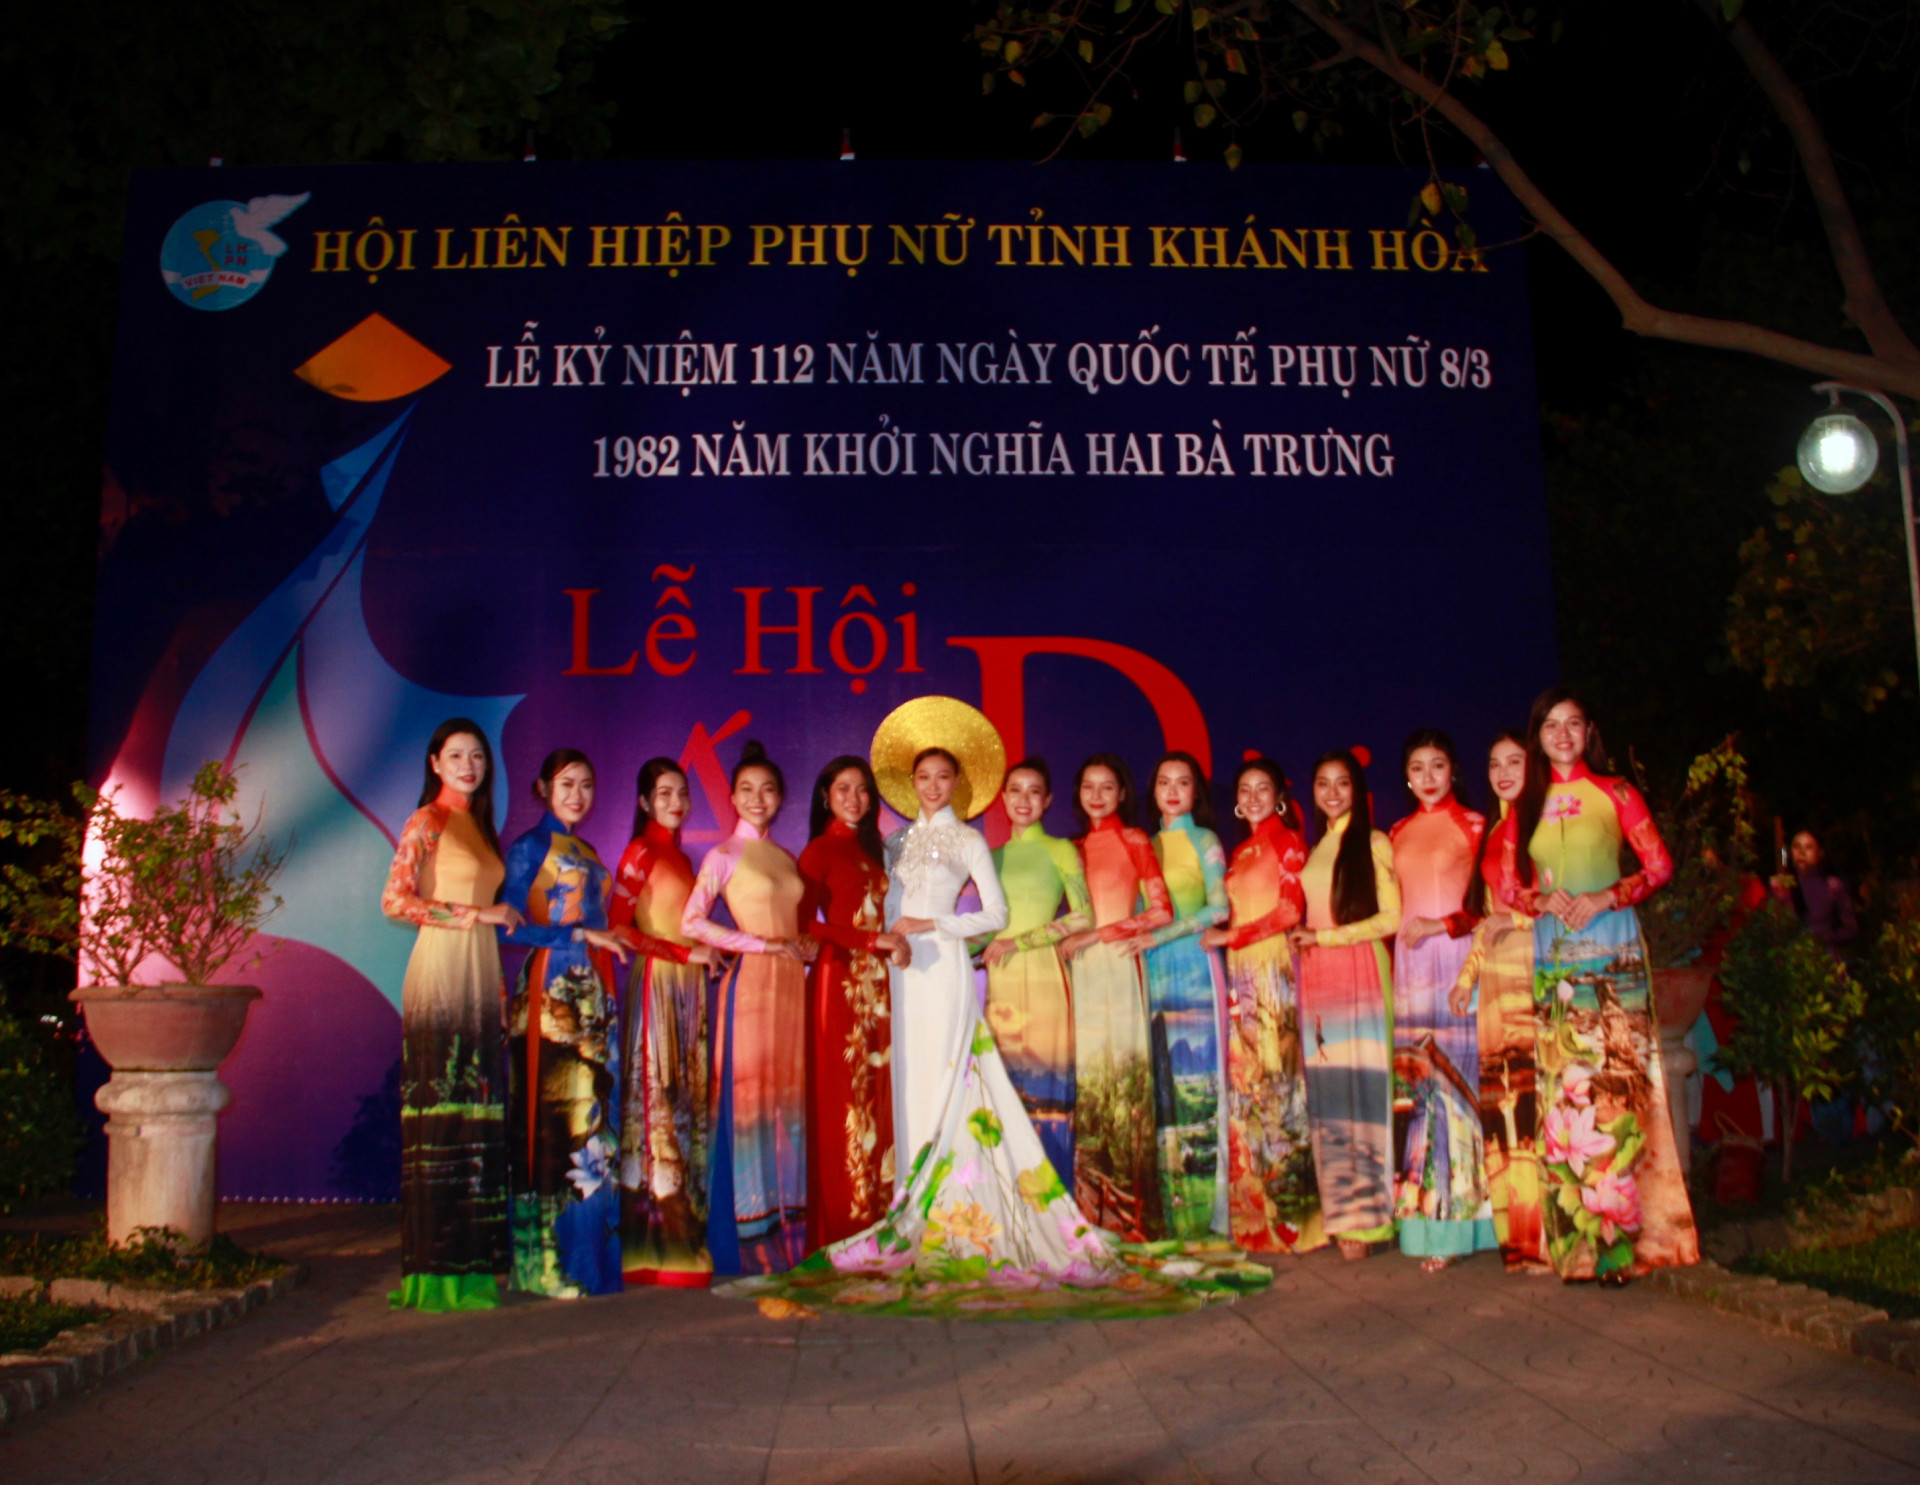 Đây là năm thứ 2 Lễ hội áo do Hội Liên hiệp Phụ nữ tỉnh Khánh Hòa tổ chức.